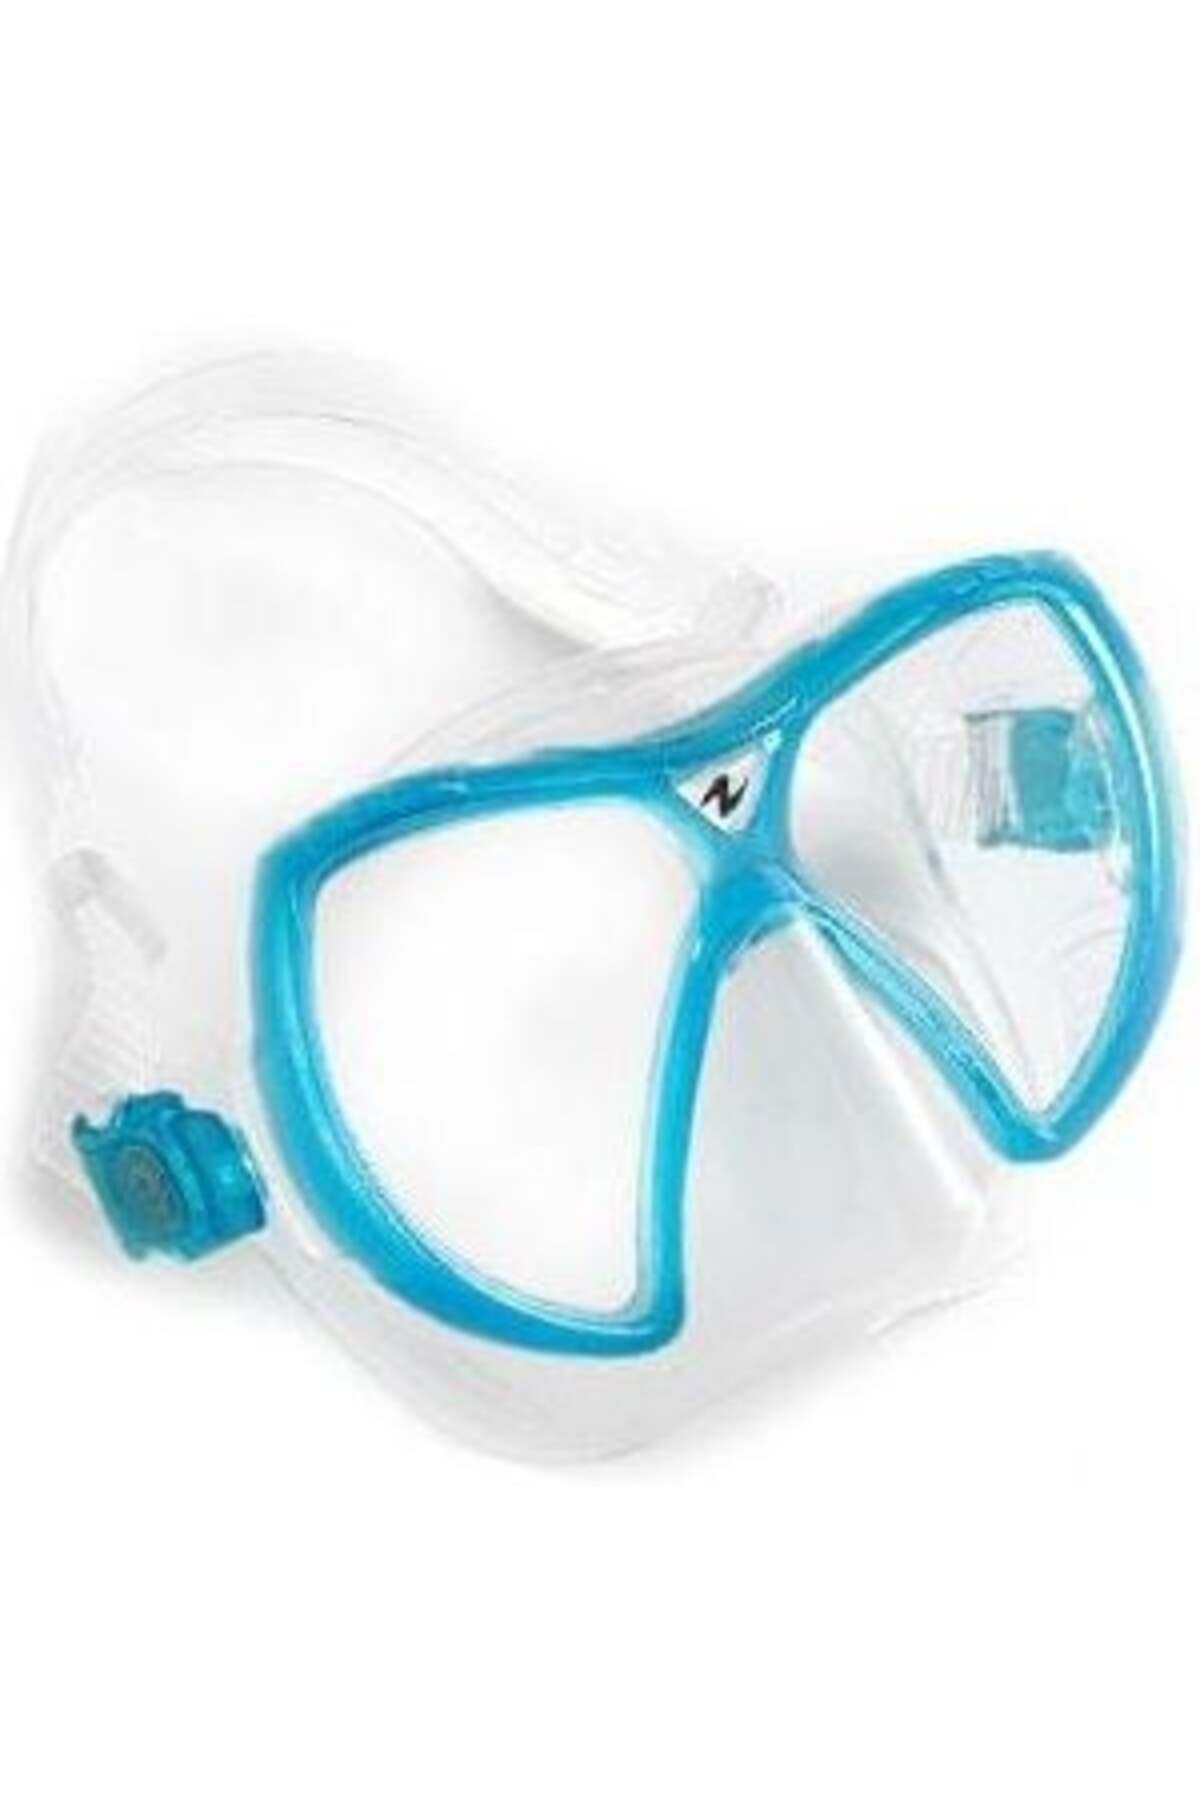 Aqua Lung Visionflex Lx Aqua Maske